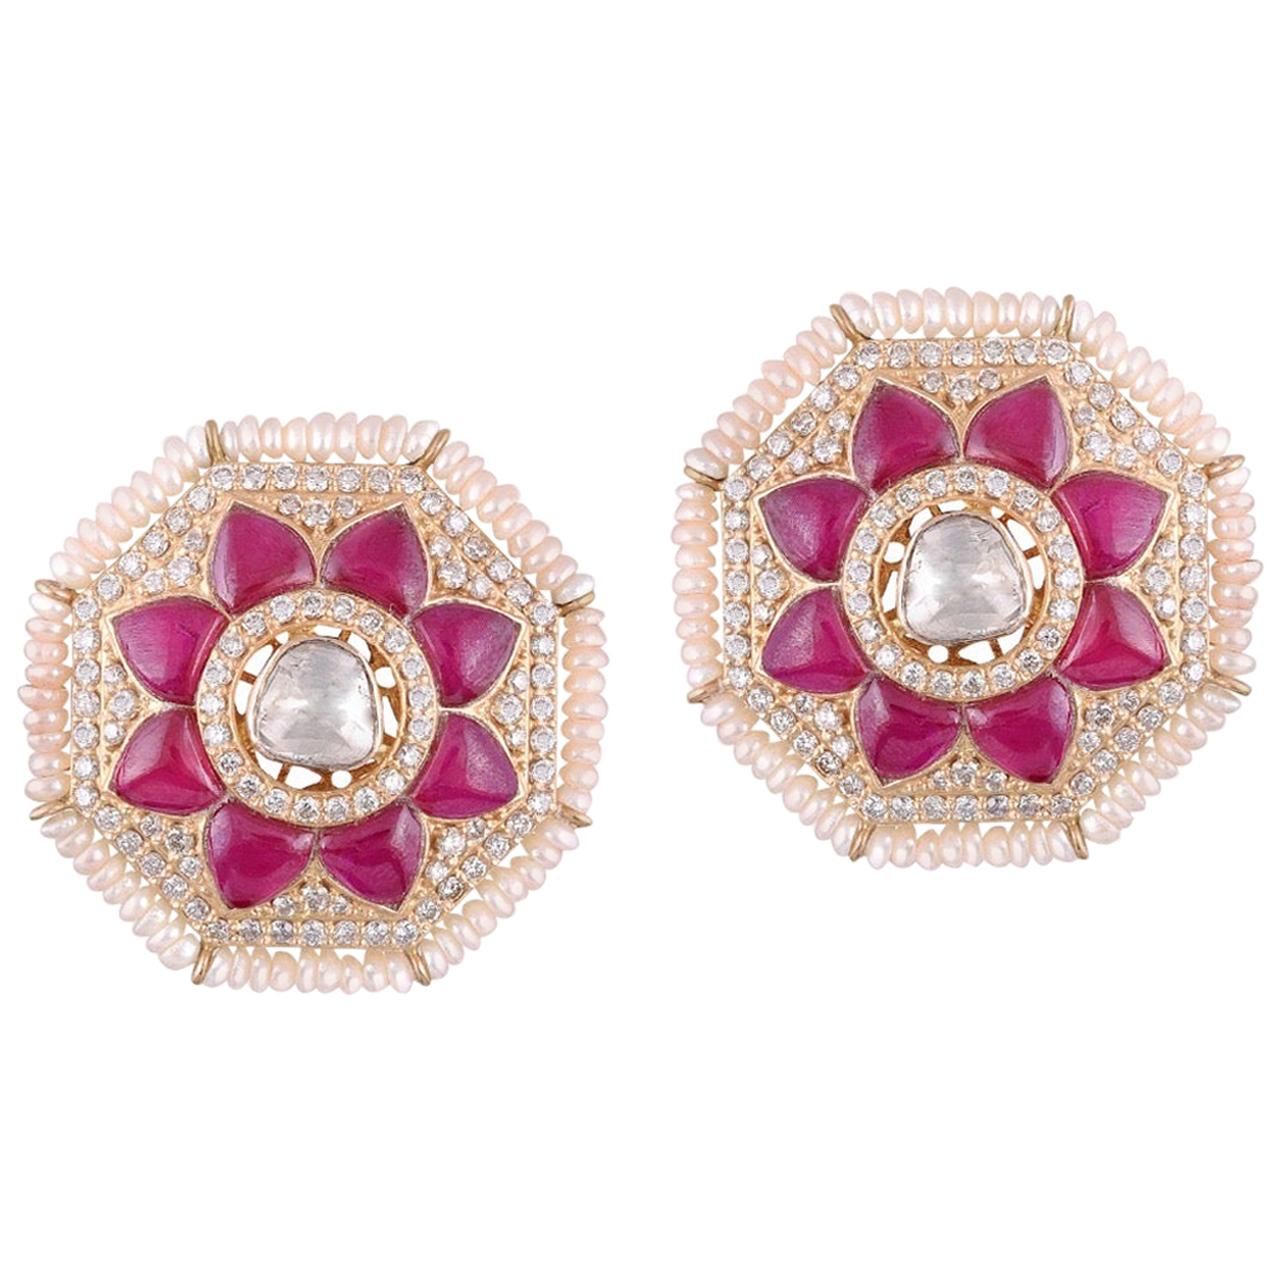 Clous d'oreilles en or 18 carats avec perles de culture et diamants blancs Polki, fabrication artisanale